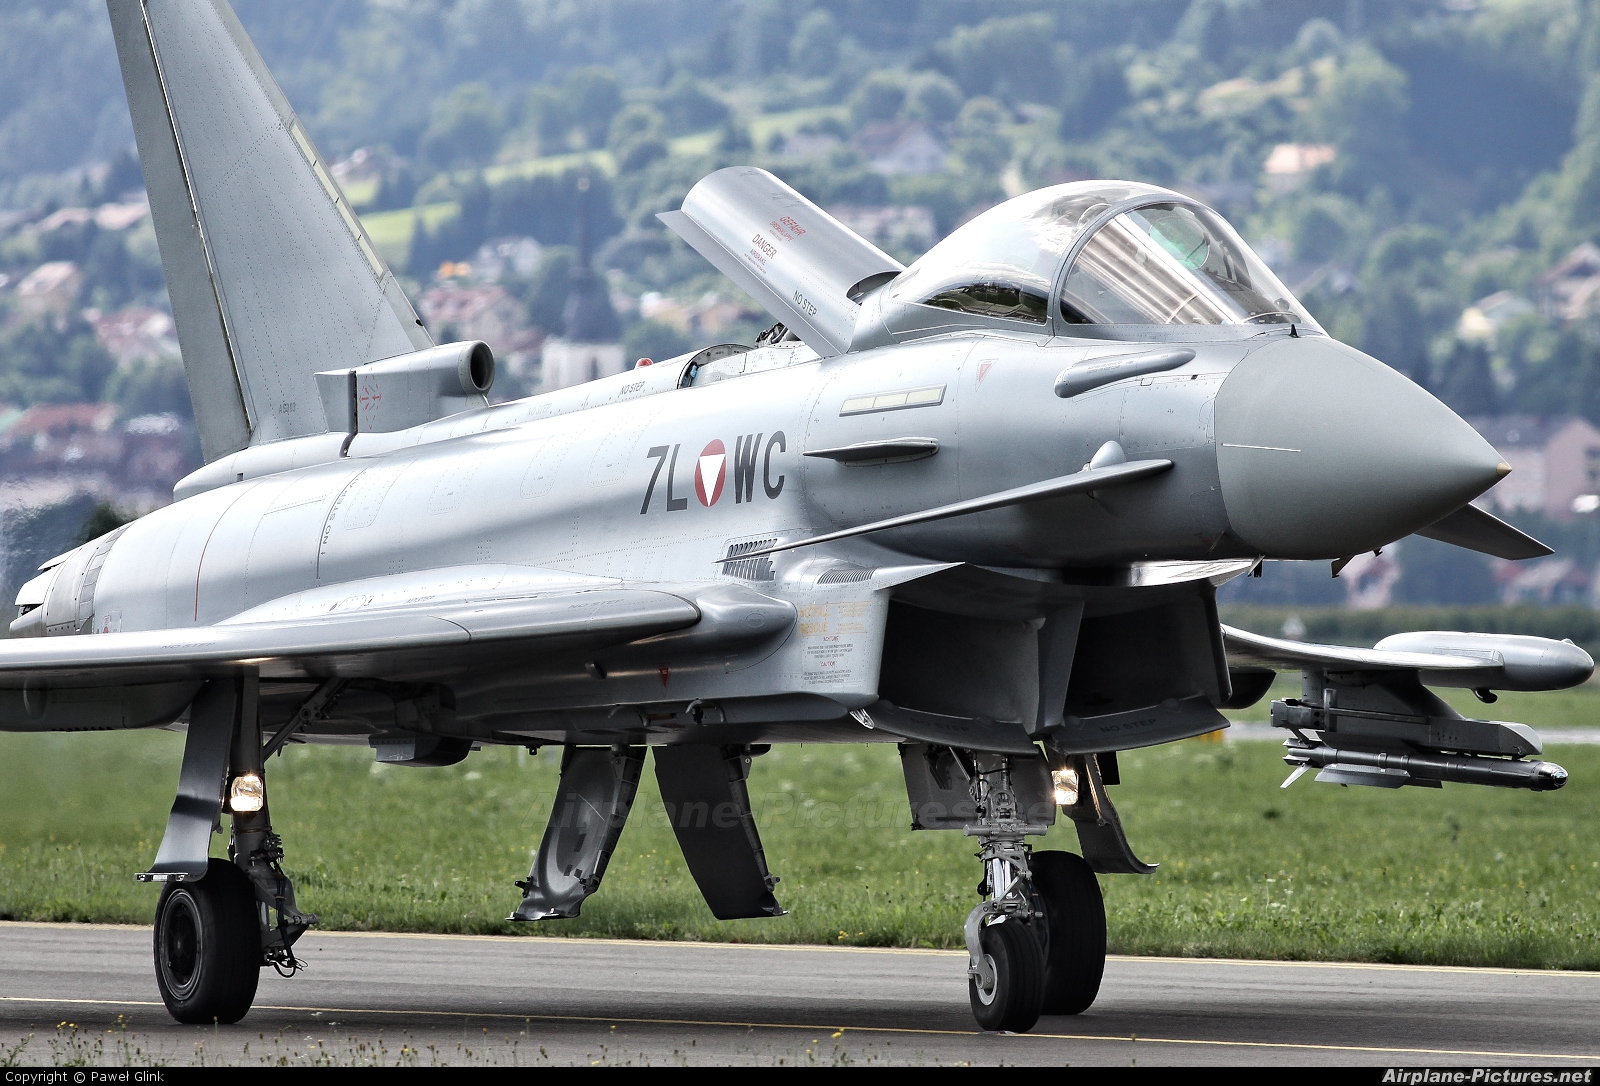 Γερμανία: Πρόστιμο 81 εκατ. ευρώ στην Eurofighter GmbH για την υπόθεση της αυστριακής αγοράς